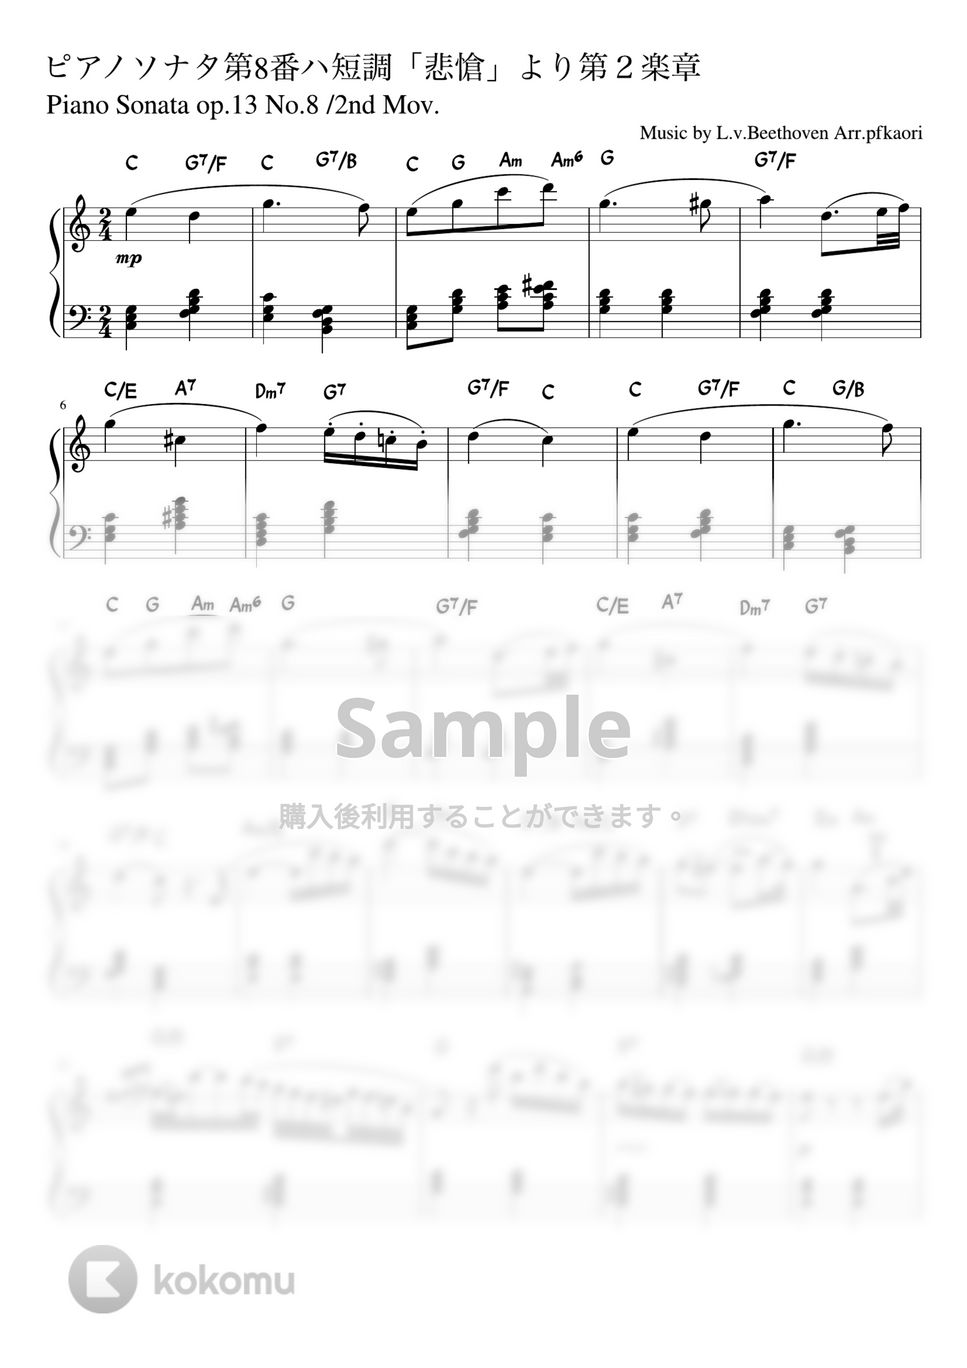 ベートーヴェン - ピアノソナタ第8番第2楽章「悲愴」 (C・ピアノソロ/コード和音で弾く) by pfkaori